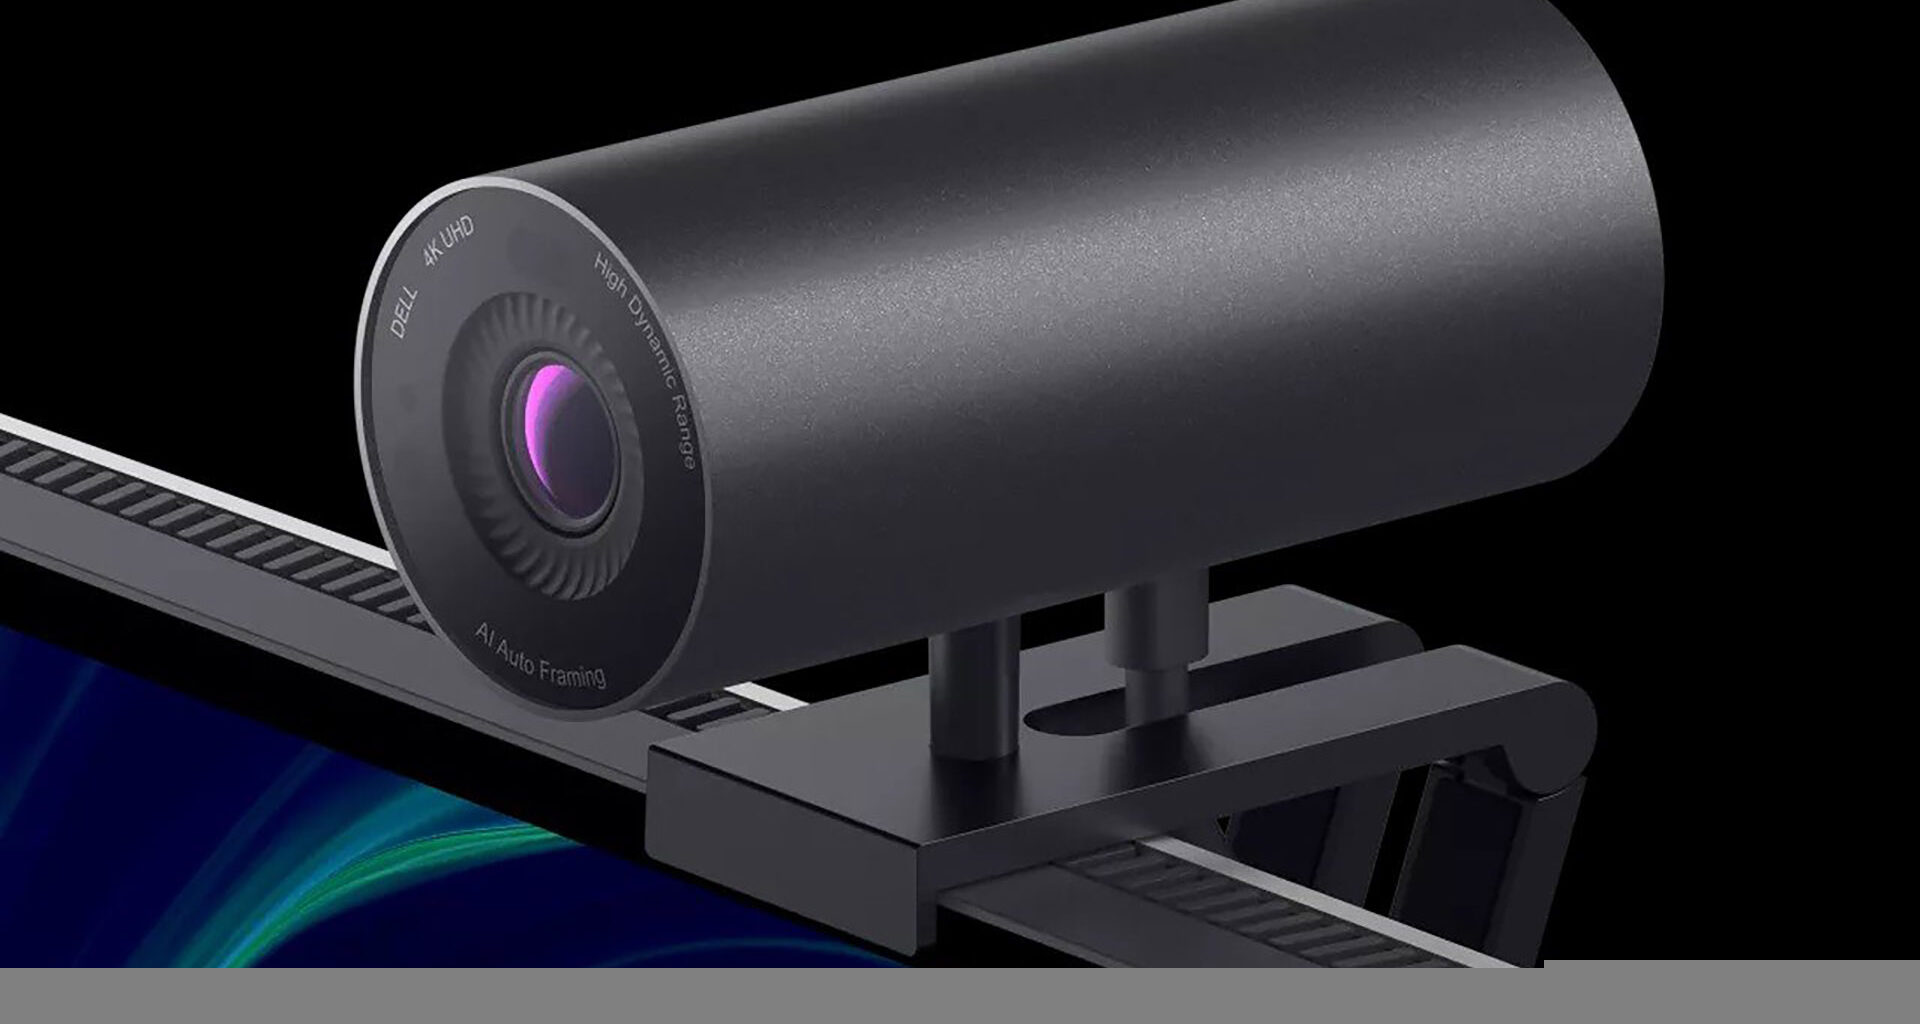 Review: webcam dell ultrasharp impressiona com 4k. A webcam dell ultrasharp consegue fazer gravações em 4k, e possui inteligência artificial que oferece as melhores imagens